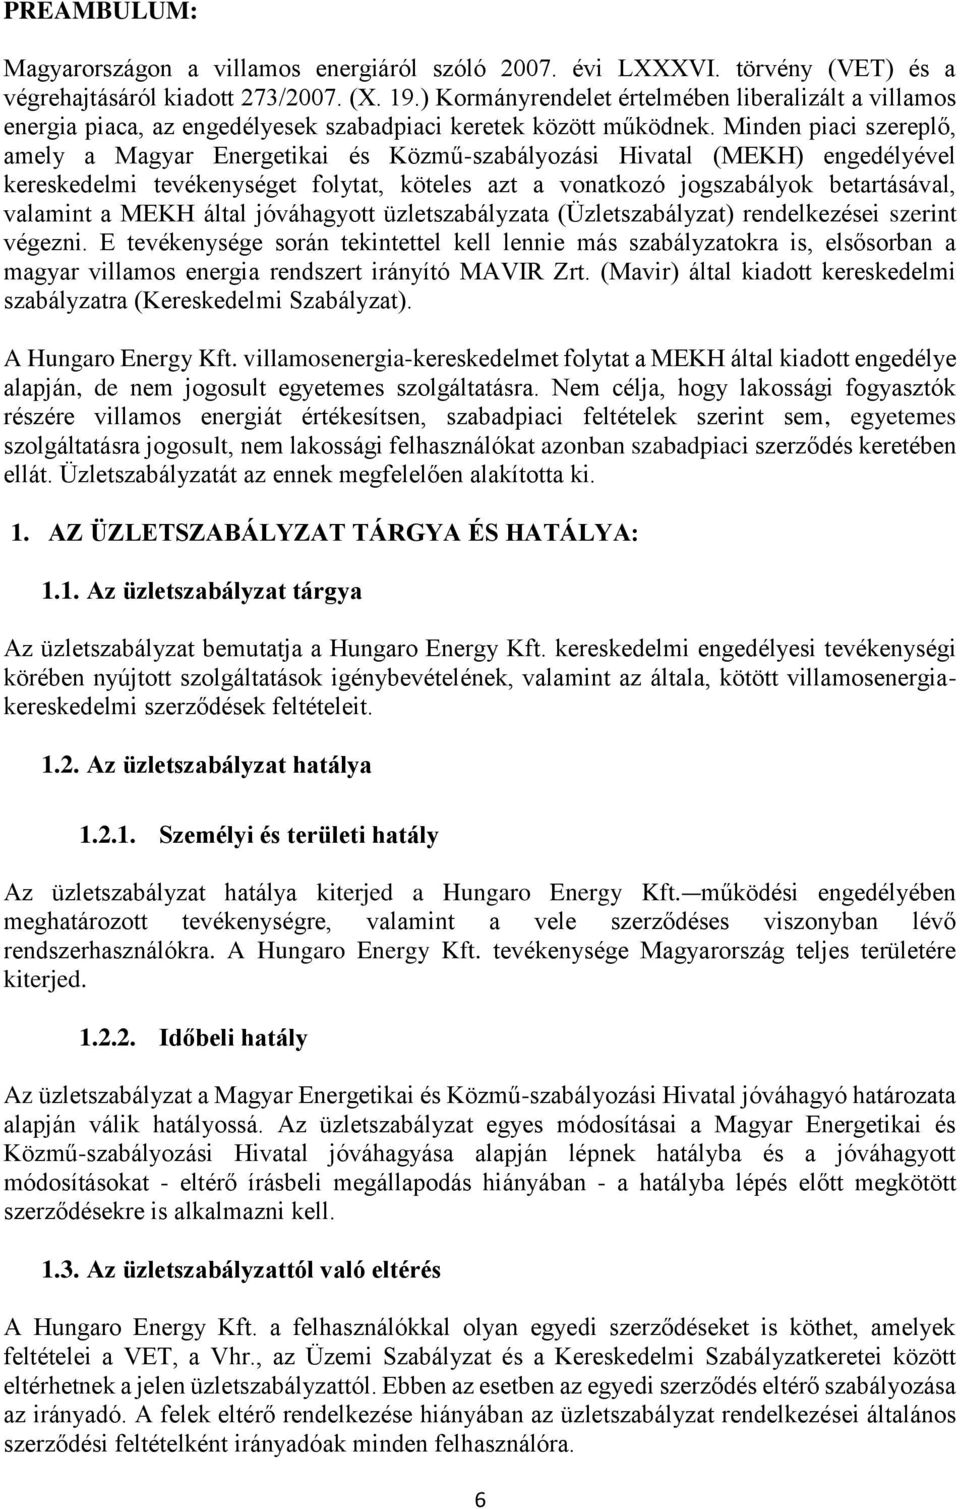 Minden piaci szereplő, amely a Magyar Energetikai és Közmű-szabályozási Hivatal (MEKH) engedélyével kereskedelmi tevékenységet folytat, köteles azt a vonatkozó jogszabályok betartásával, valamint a